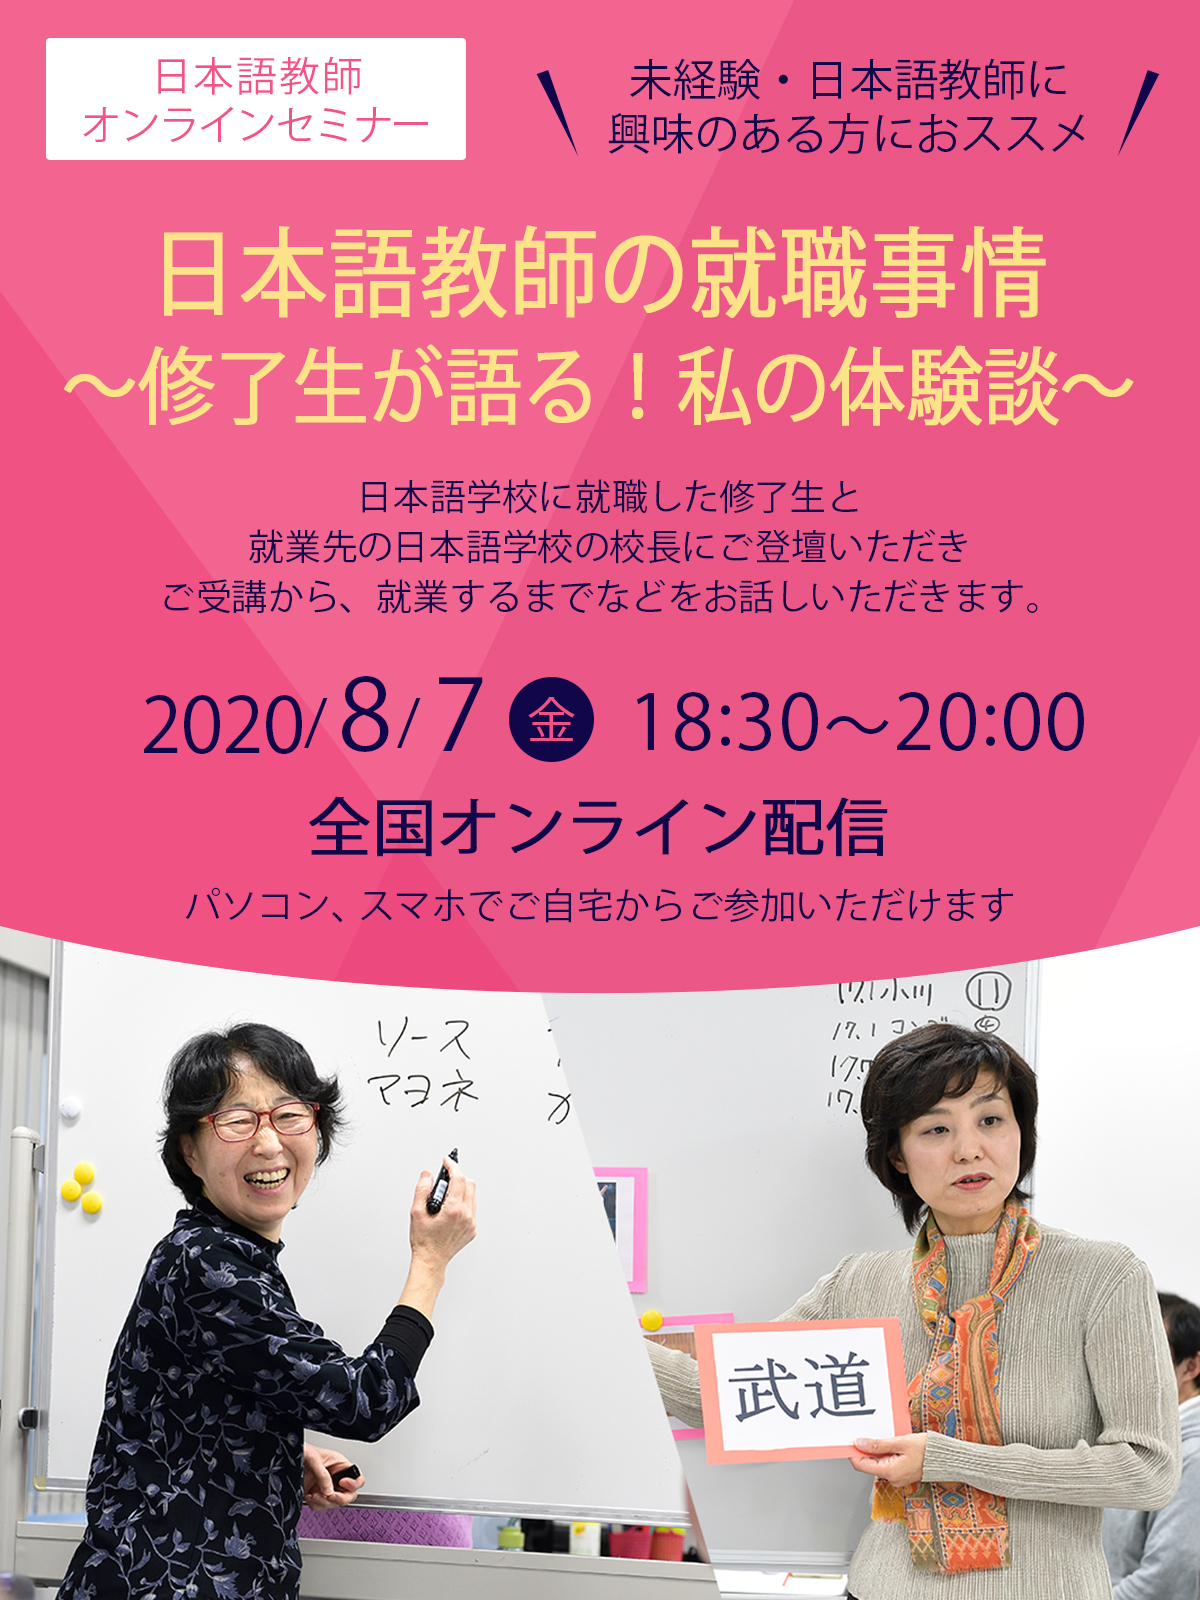 8 7開催 日本語教師オンラインセミナー 日本語教師の就職事情 修了生が語る 私の体験談 資格取得 就転職の専門校のヒューマンアカデミー